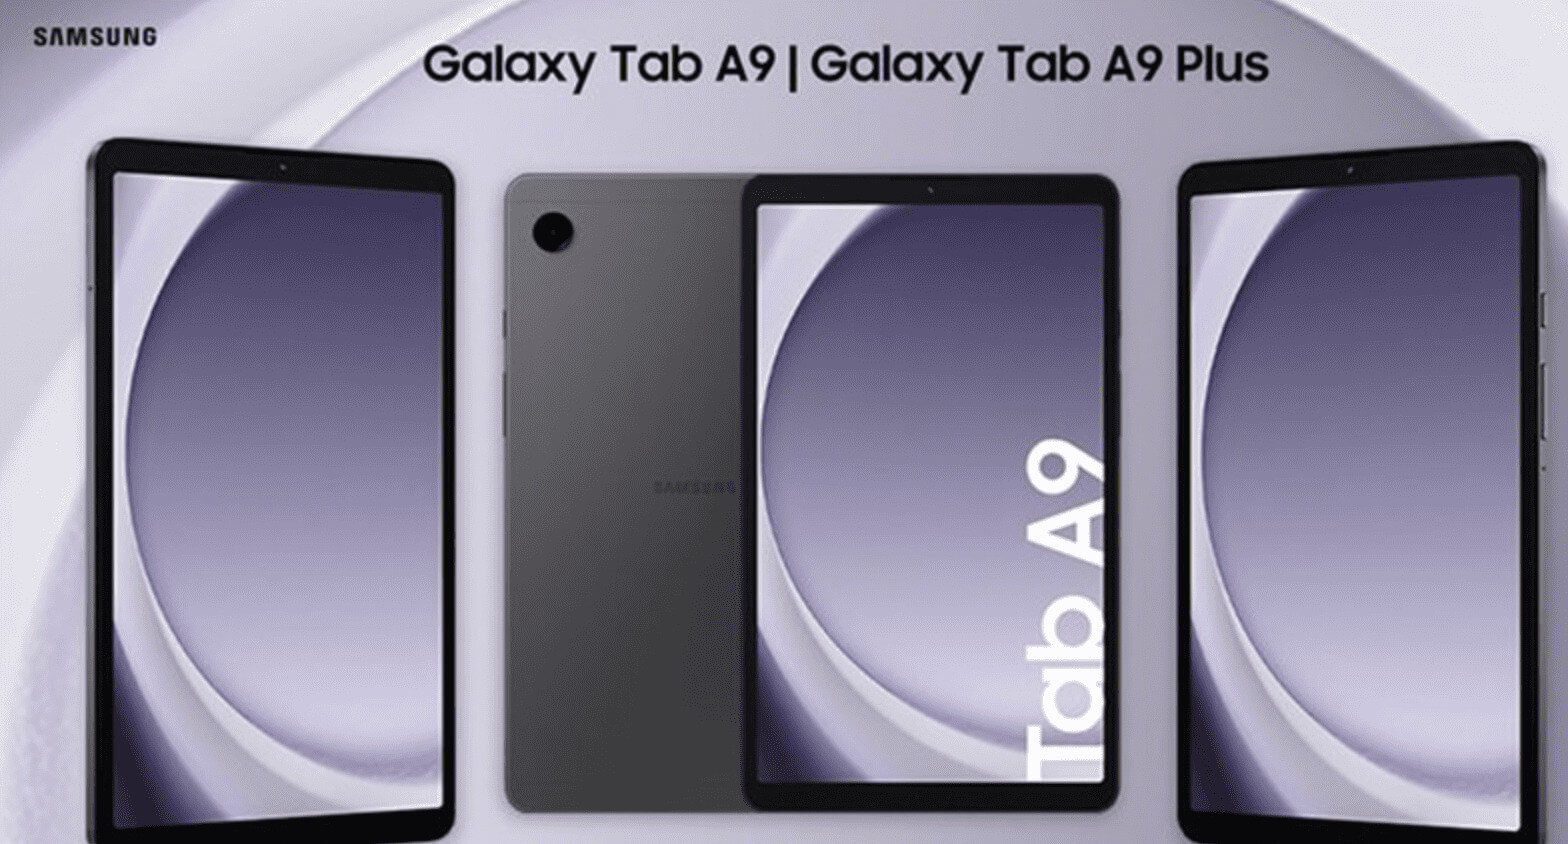 Samsung chính thức ra mắt sản phẩm Galaxy Tab A9 series